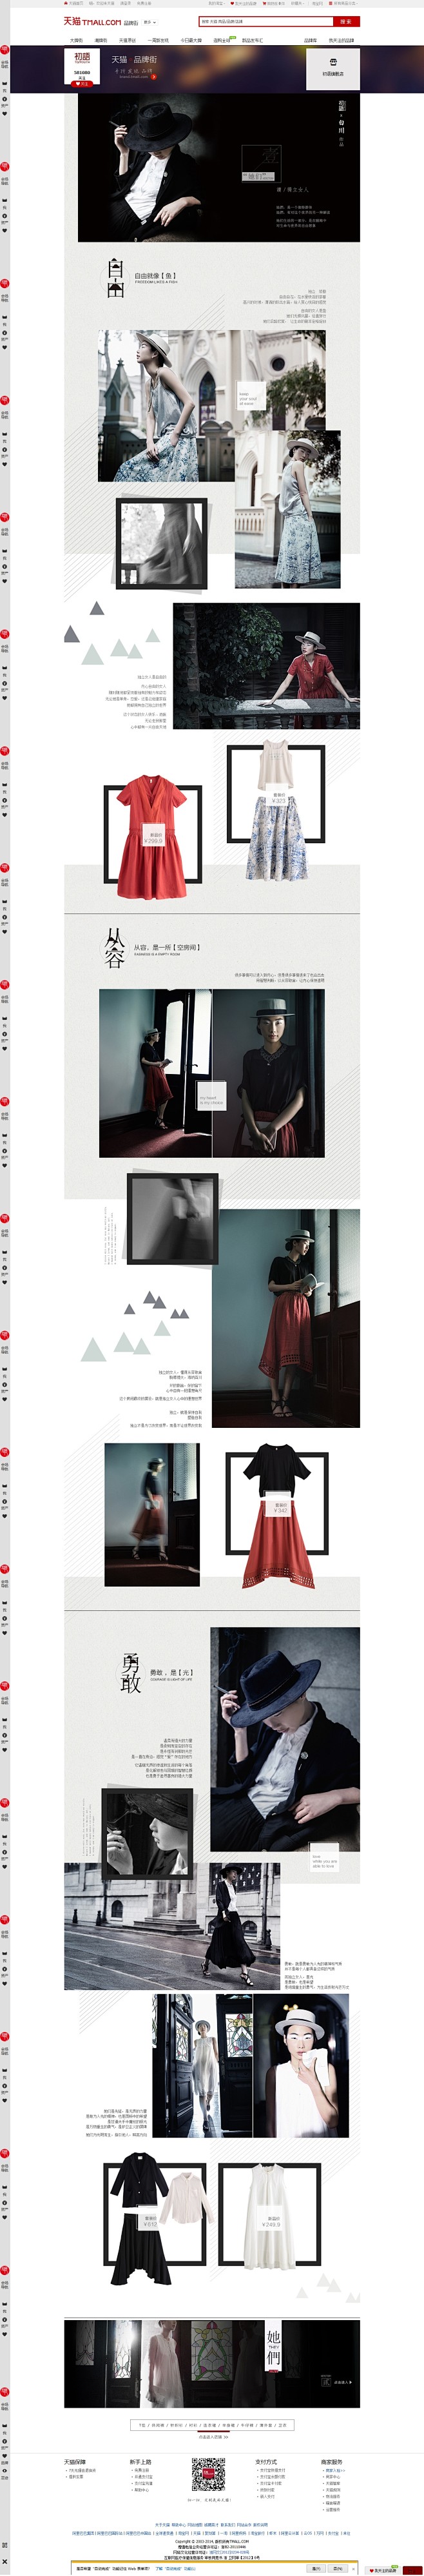 初语 女装亚麻风 中国风网页排版设计 